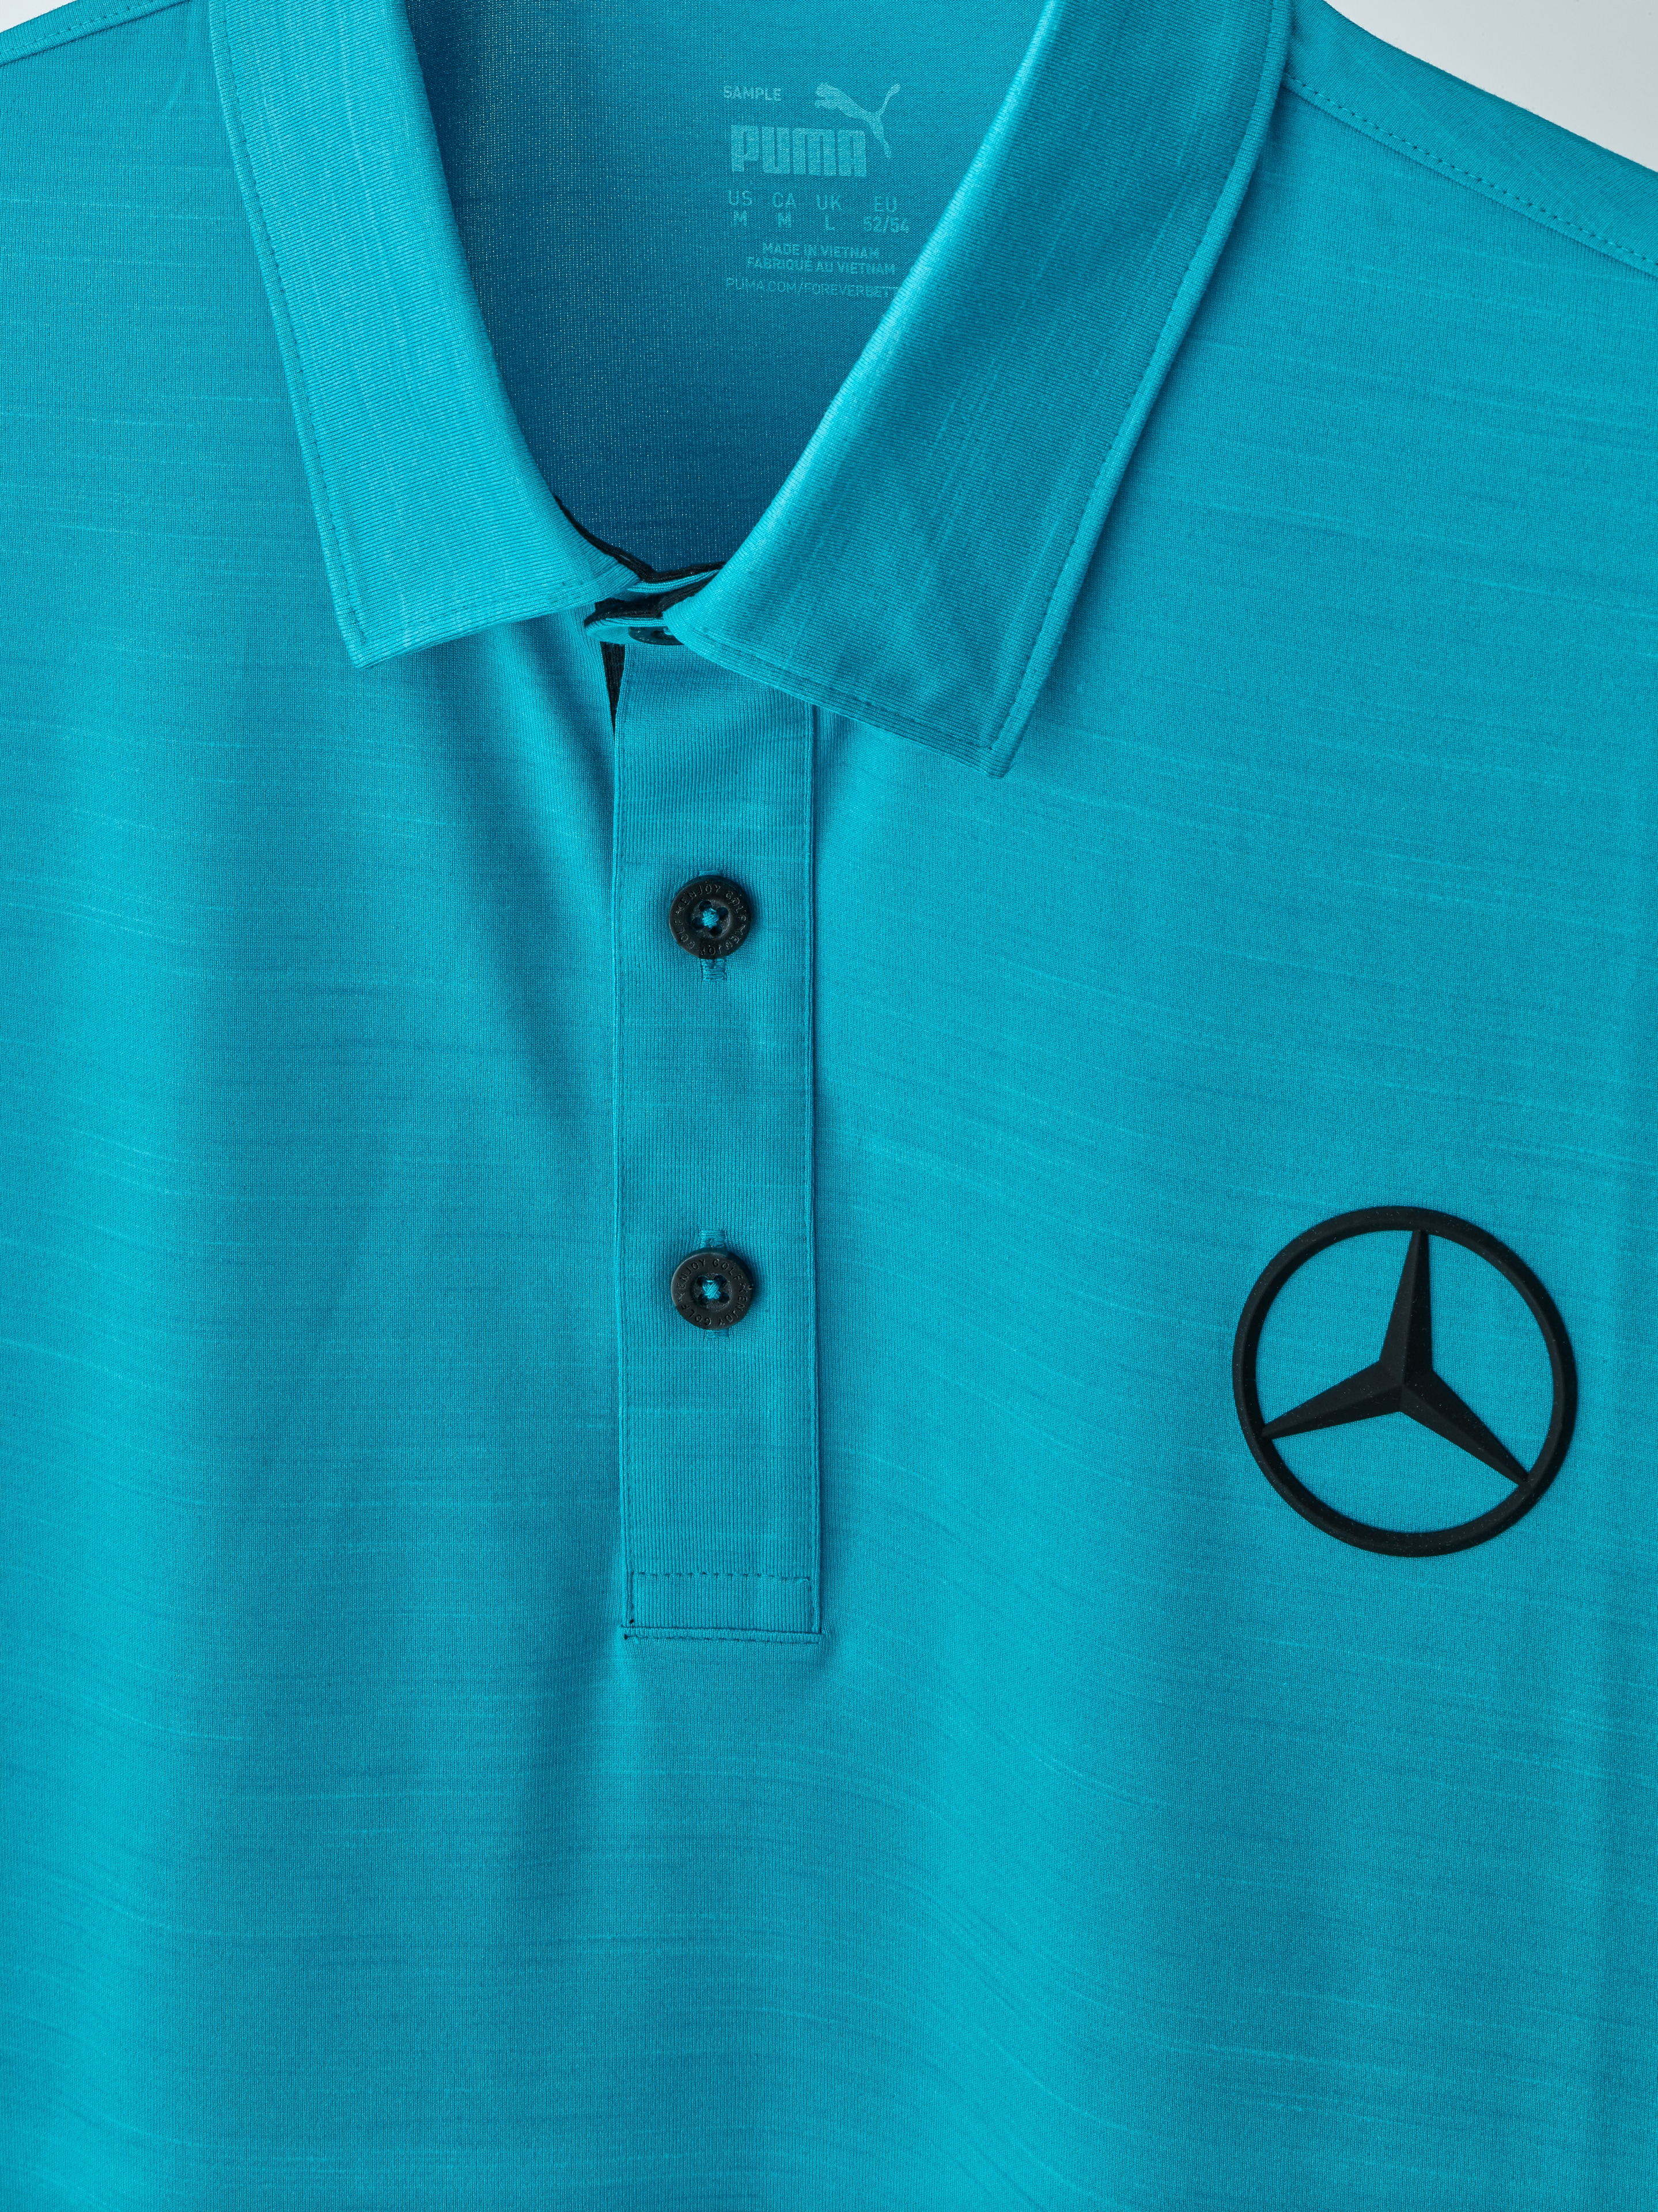 Golf-Poloshirt Herren, Cloudspun Haystack - Aqua Blue, XXL